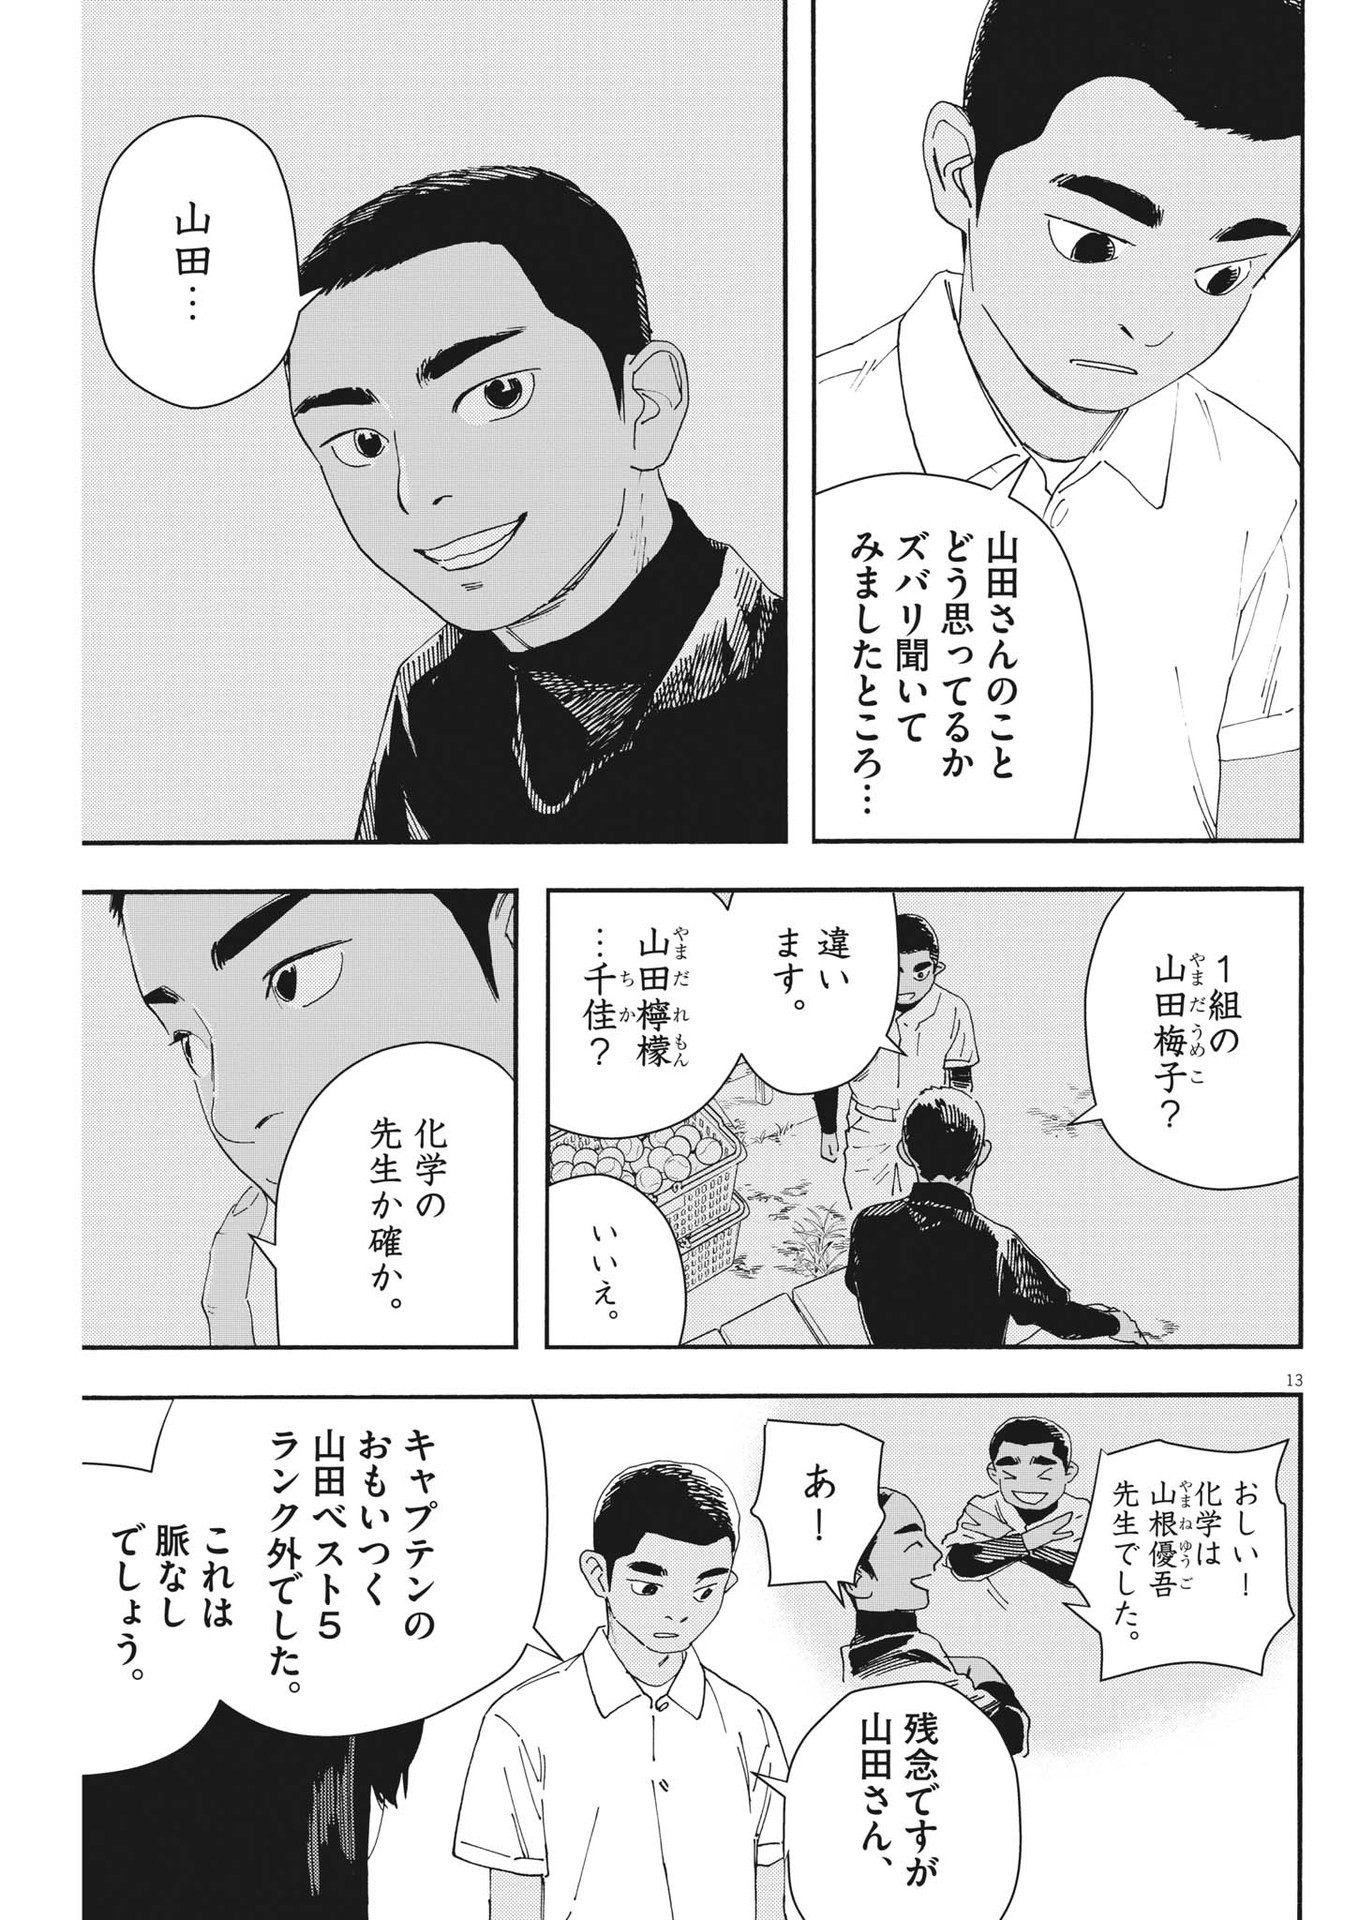 Hoshino-kun, Shitagatte! - Chapter 4 - Page 13